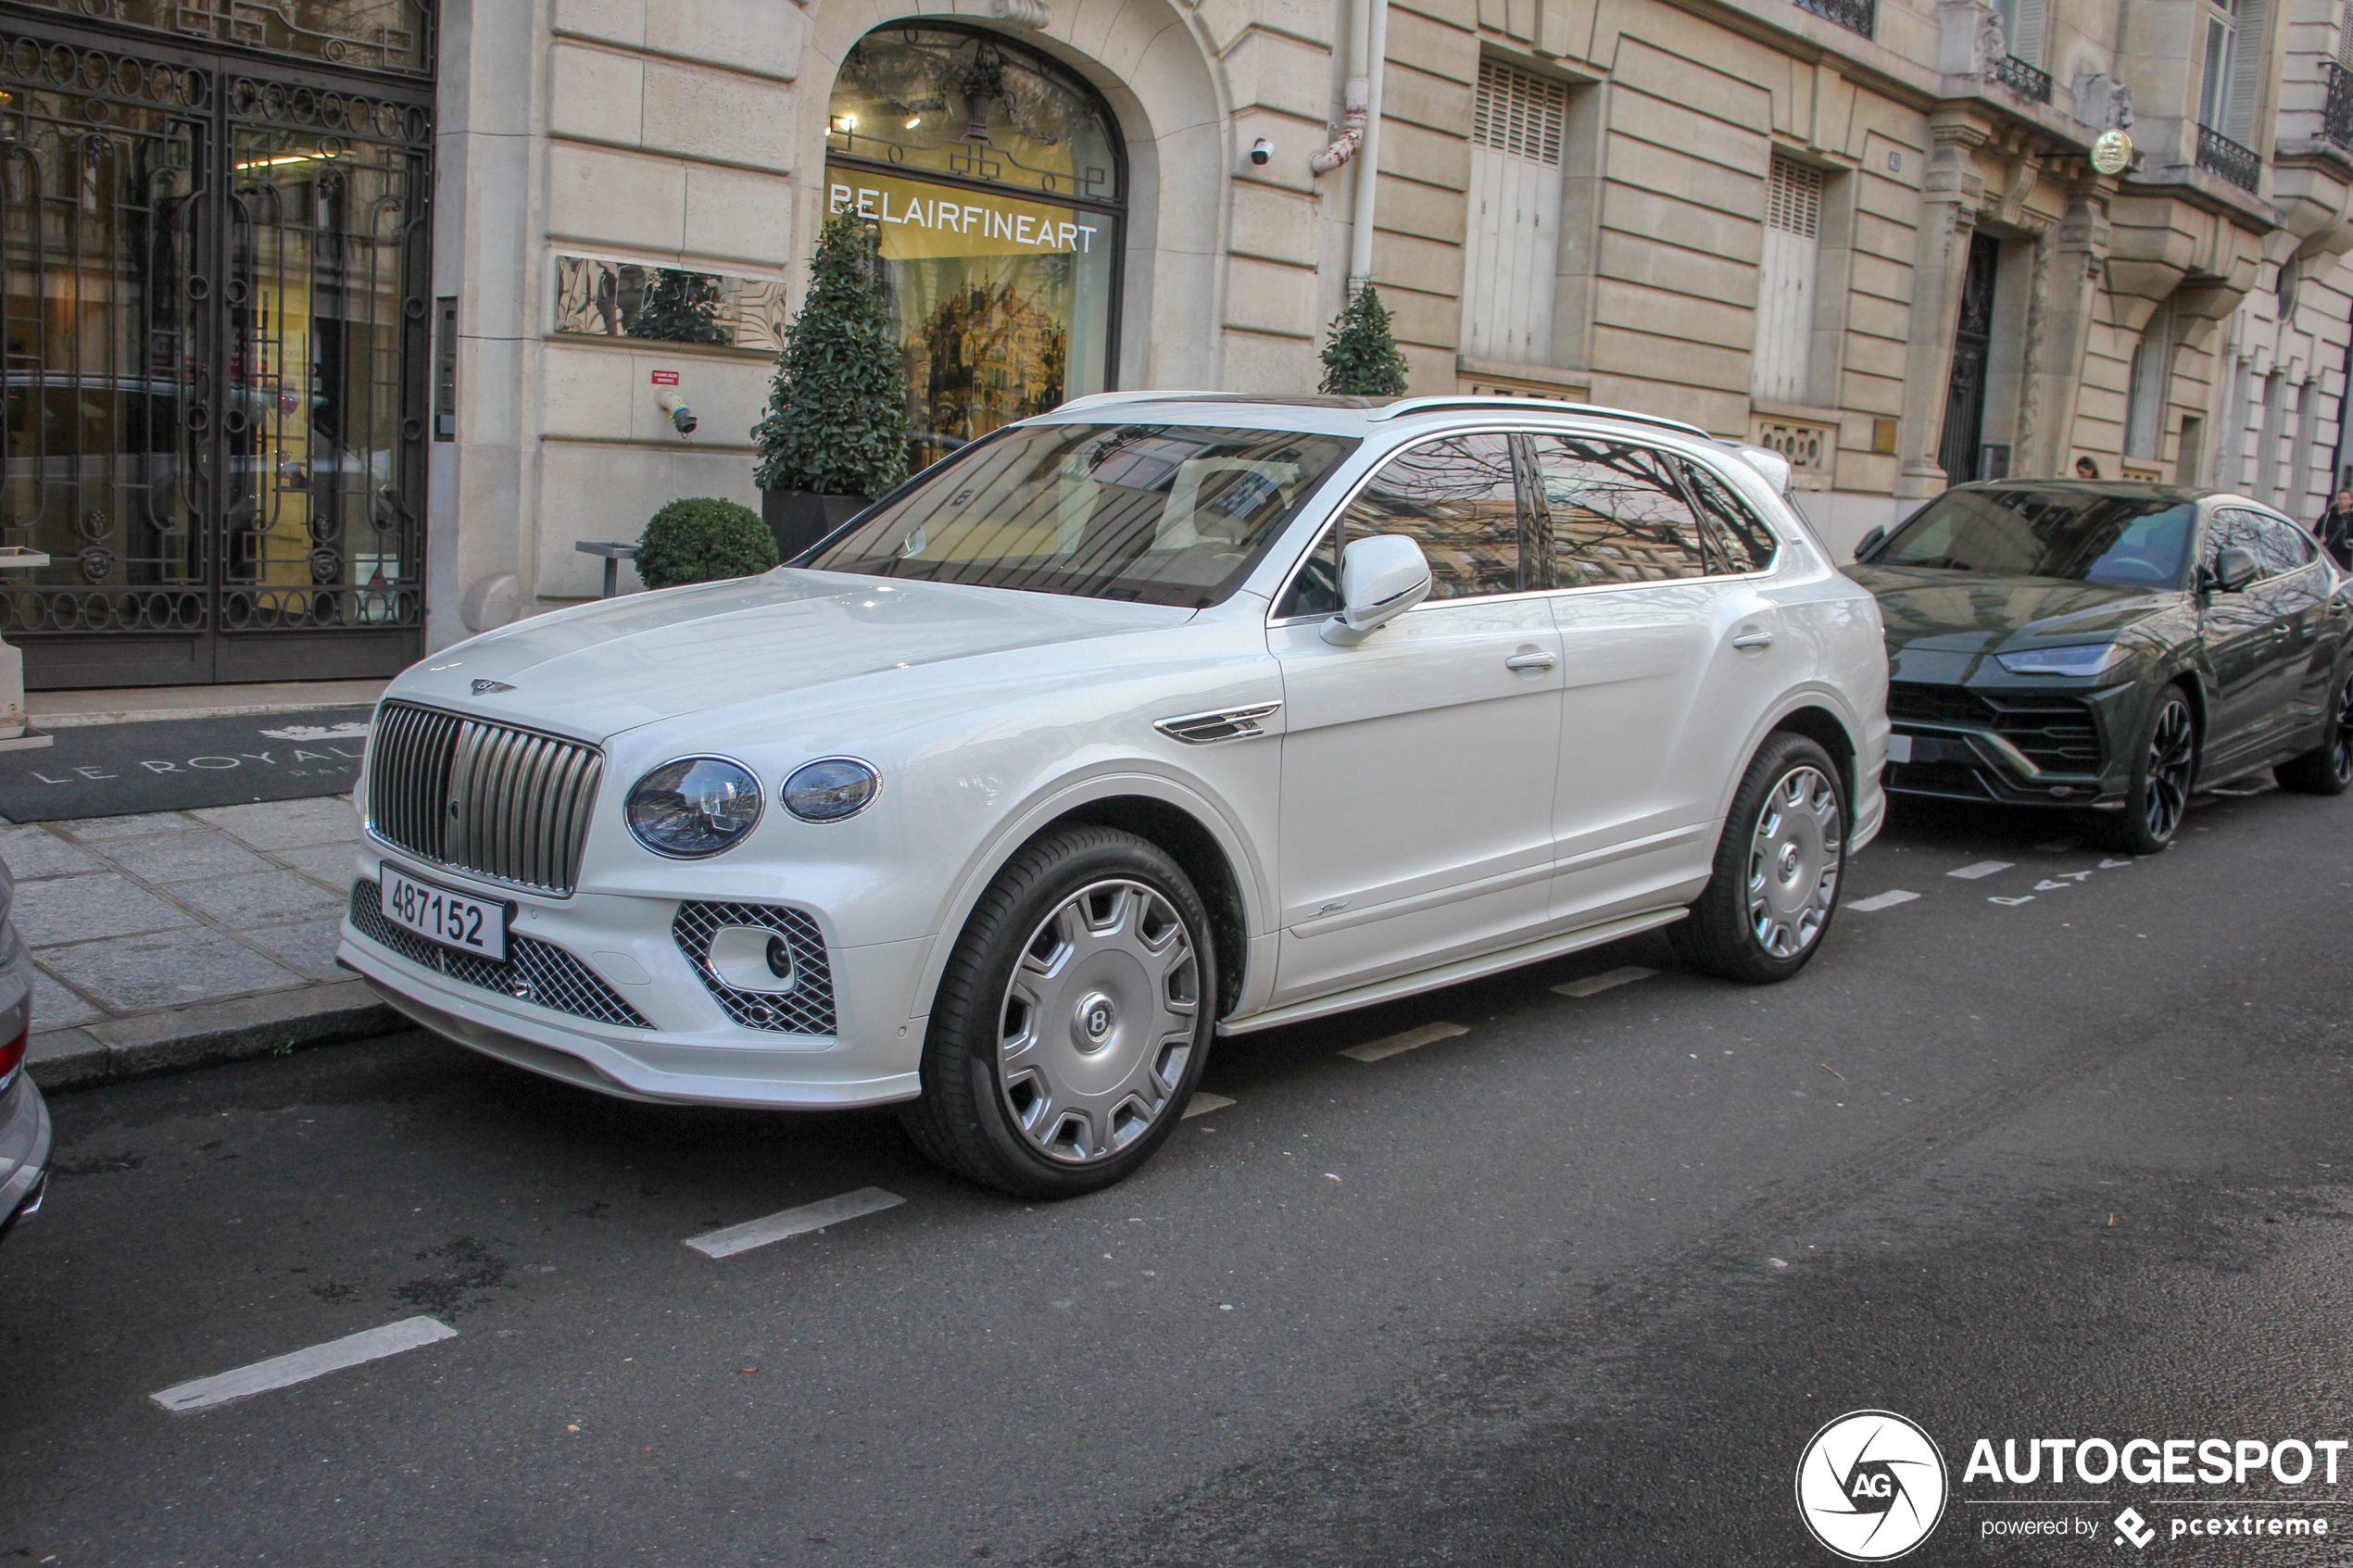 Exclusive Bentleys from Qatar turn up in Paris